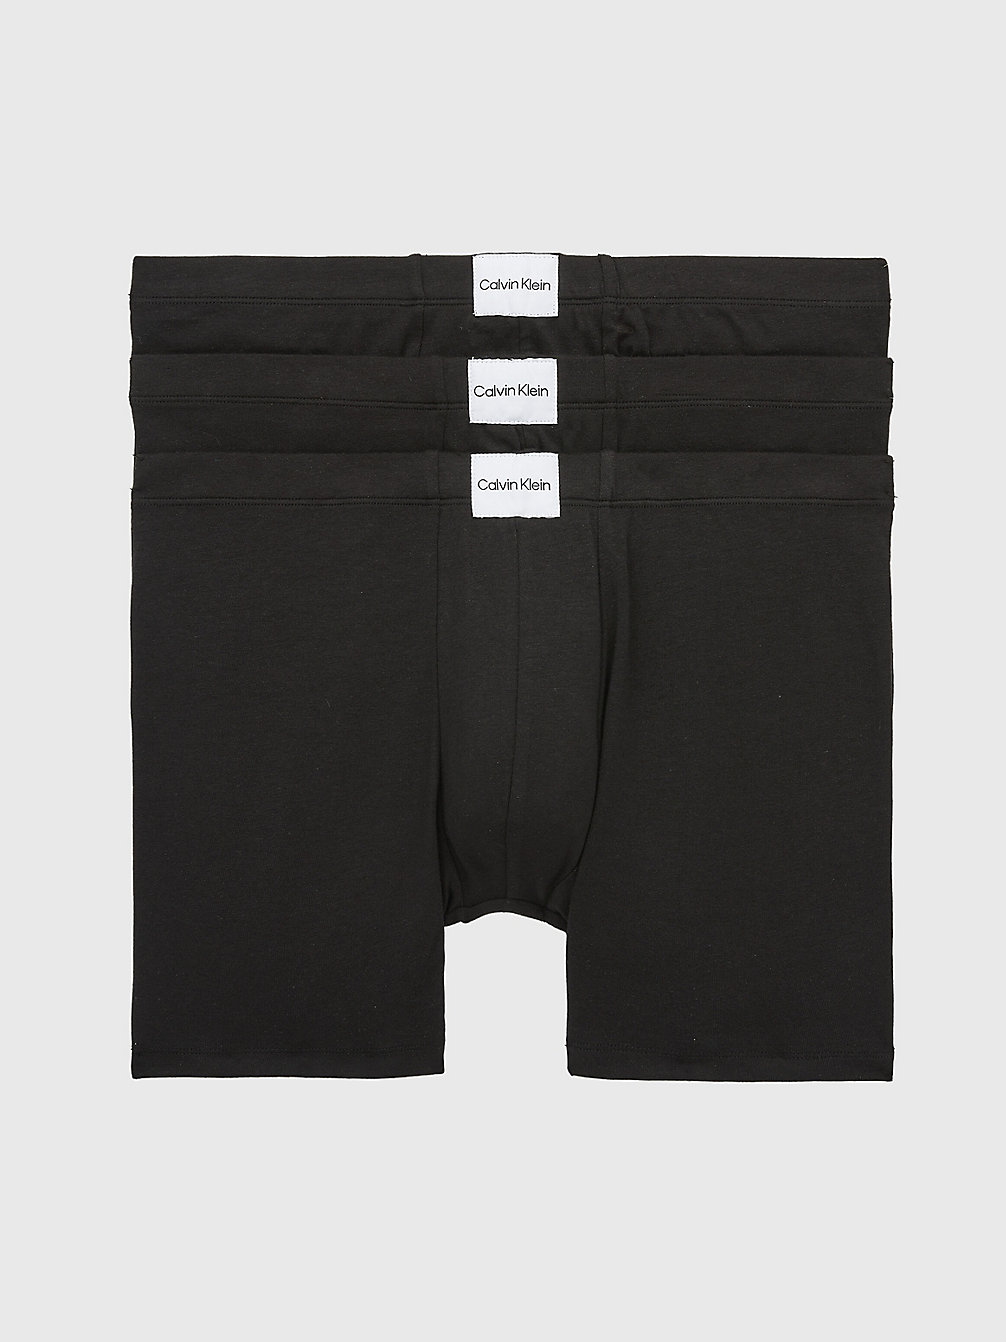 BLACK/BLACK/BLACK > Zestaw 3 Par Długich Bokserek - Pure Cotton > undefined Mężczyźni - Calvin Klein